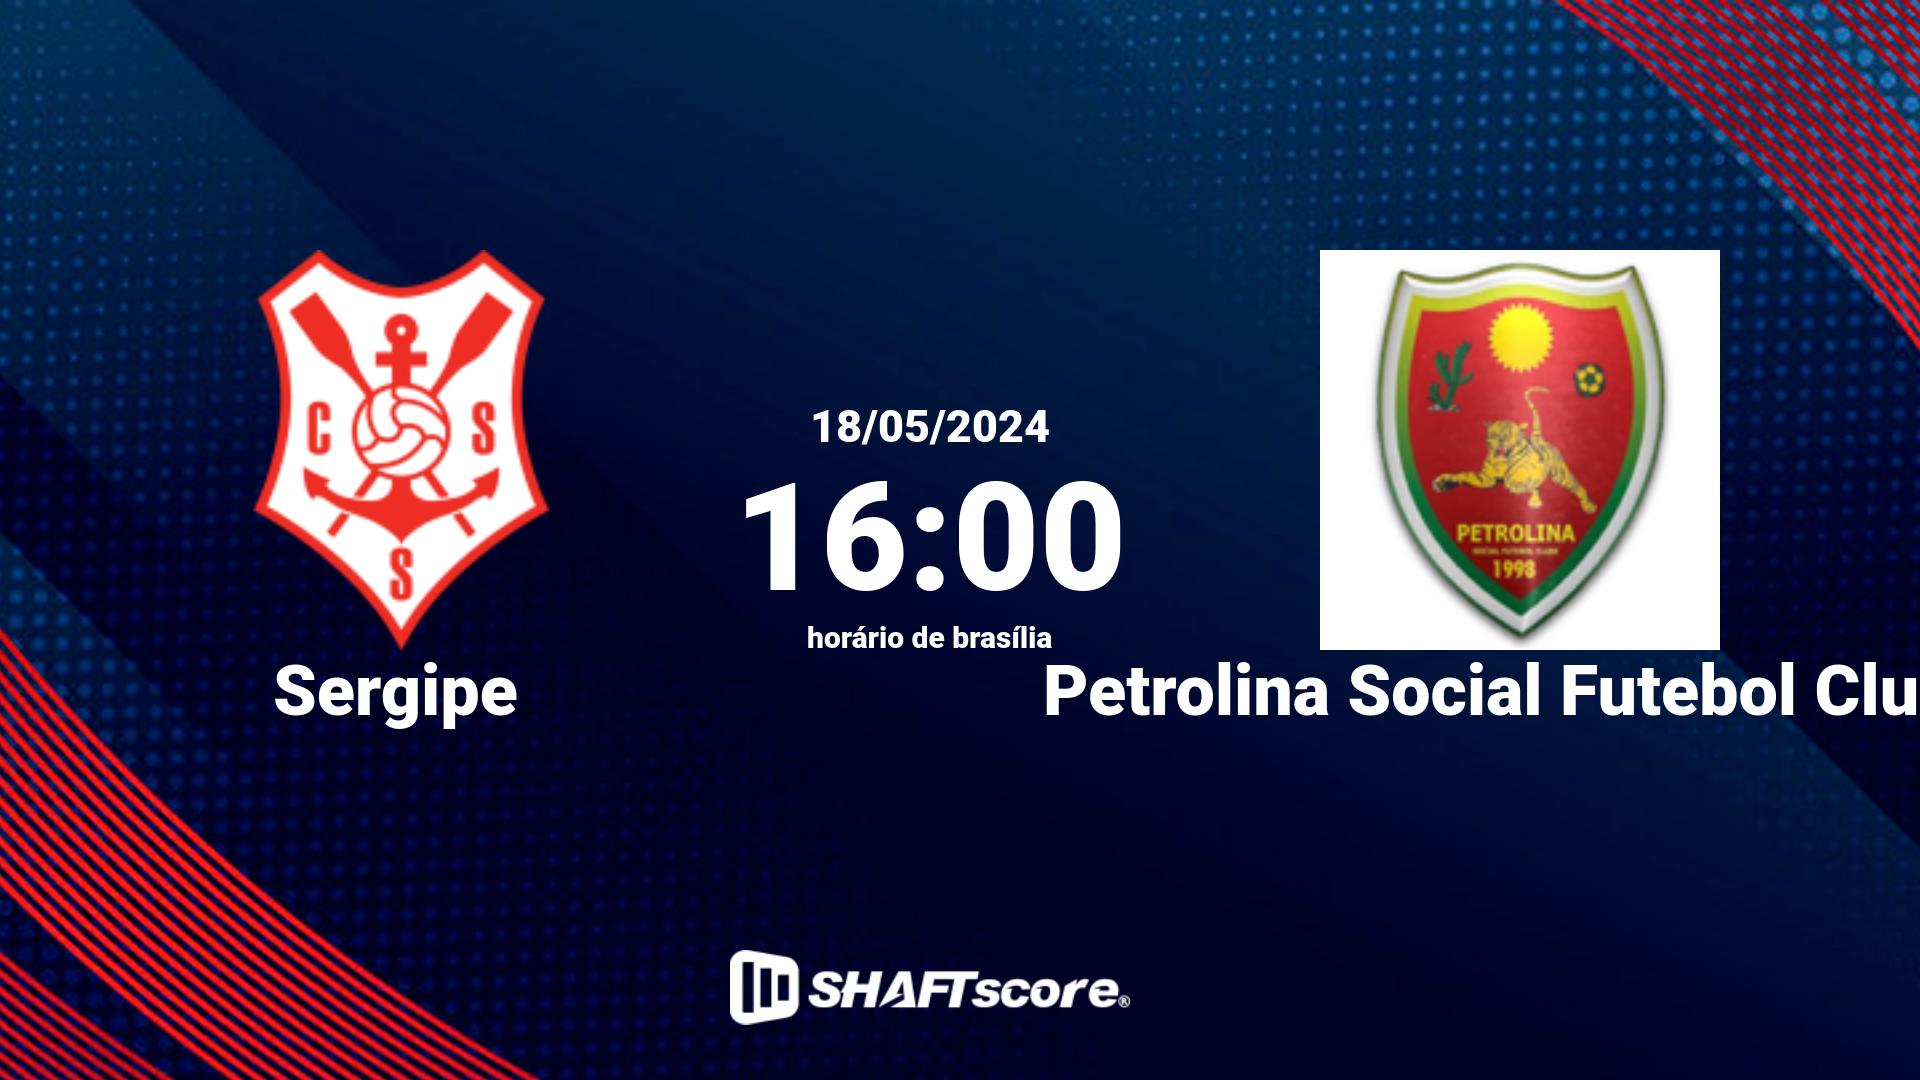 Estatísticas do jogo Sergipe vs Petrolina Social Futebol Clube 18.05 16:00